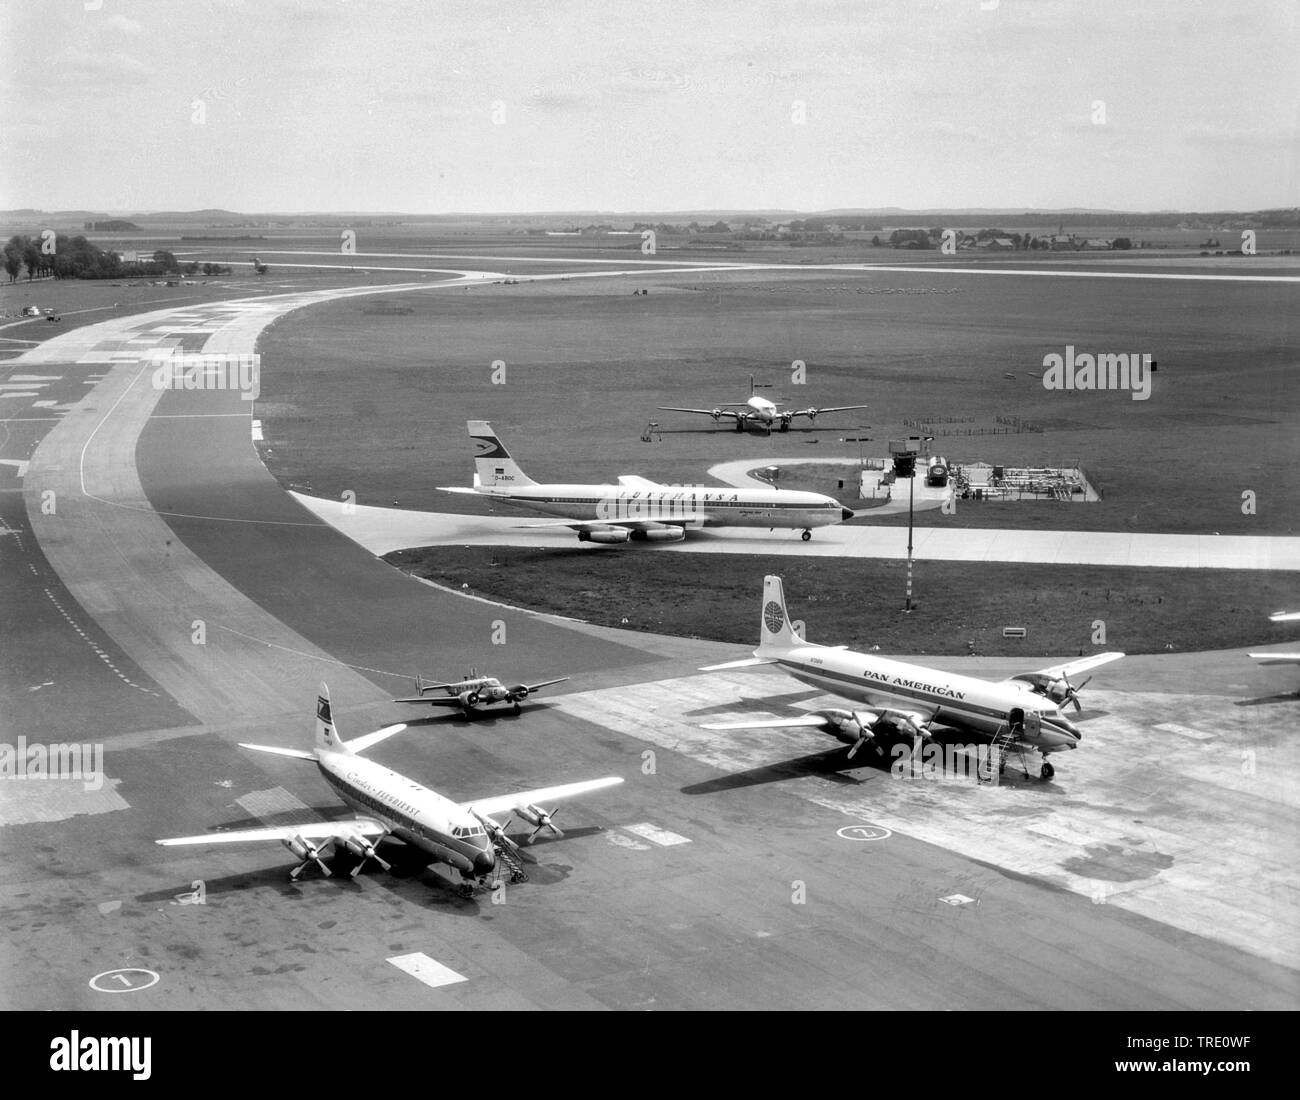 Les avions sur l'aéroport Munich Riem, côté gauche Vickers Viscount Condor Flugdienst, que Douglas DC-7 sept mers de la Pan American Airlines, derrière Beech 18, Lufthansa Boeing 707, derrière le Douglas DC-4, DC-6., historique photo aérienne, 30.06.1963, l'Allemagne, la Bavière Banque D'Images